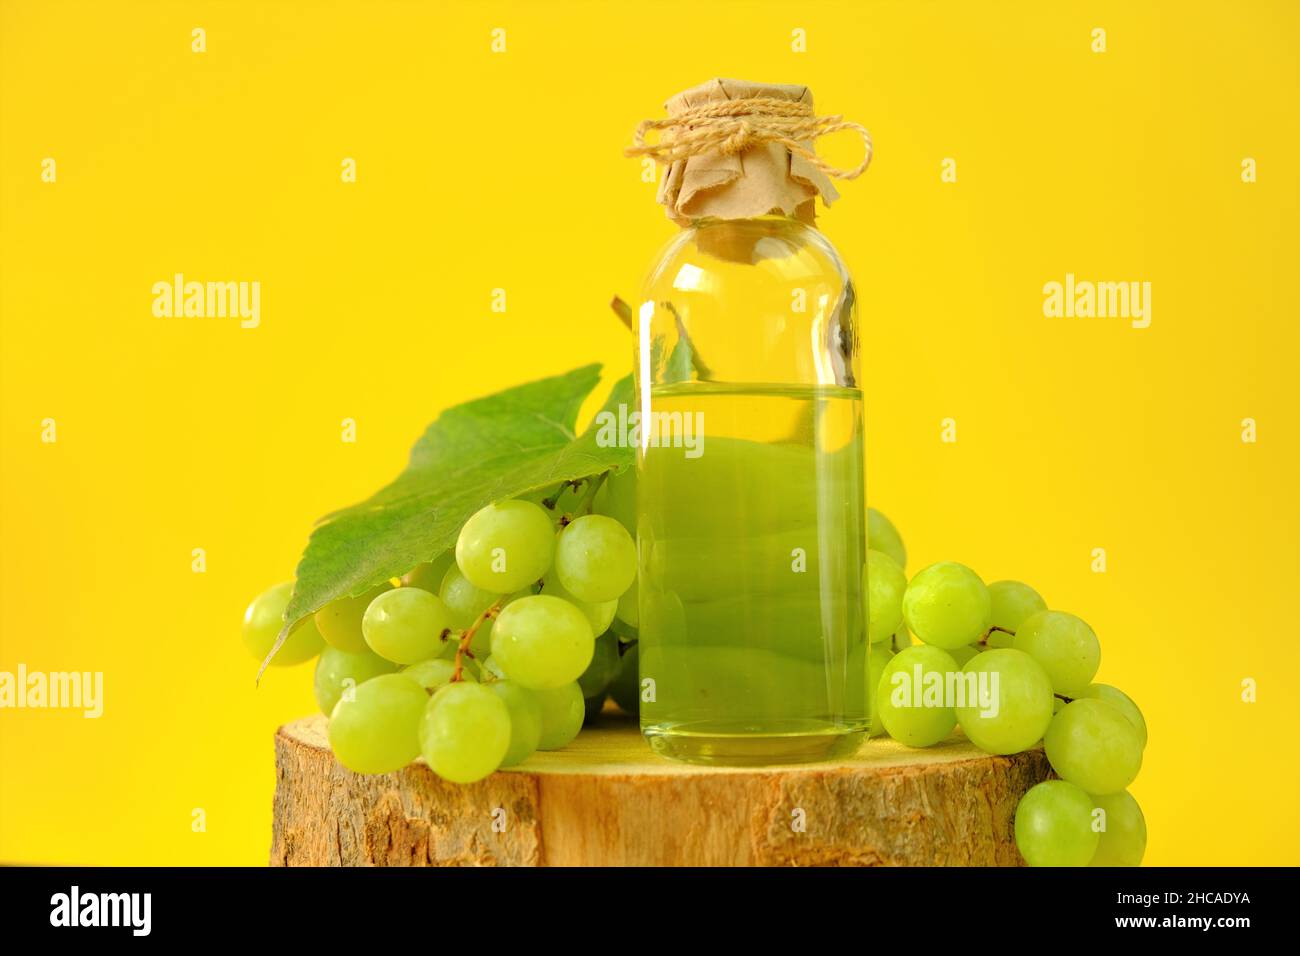 Traubenkernöl.Base kosmetisches Öl für Massage und Pflege für Gesicht und Körper. Flasche und Bund von grünen Trauben auf einer gelben background.Organic natürliche Traube Stockfoto